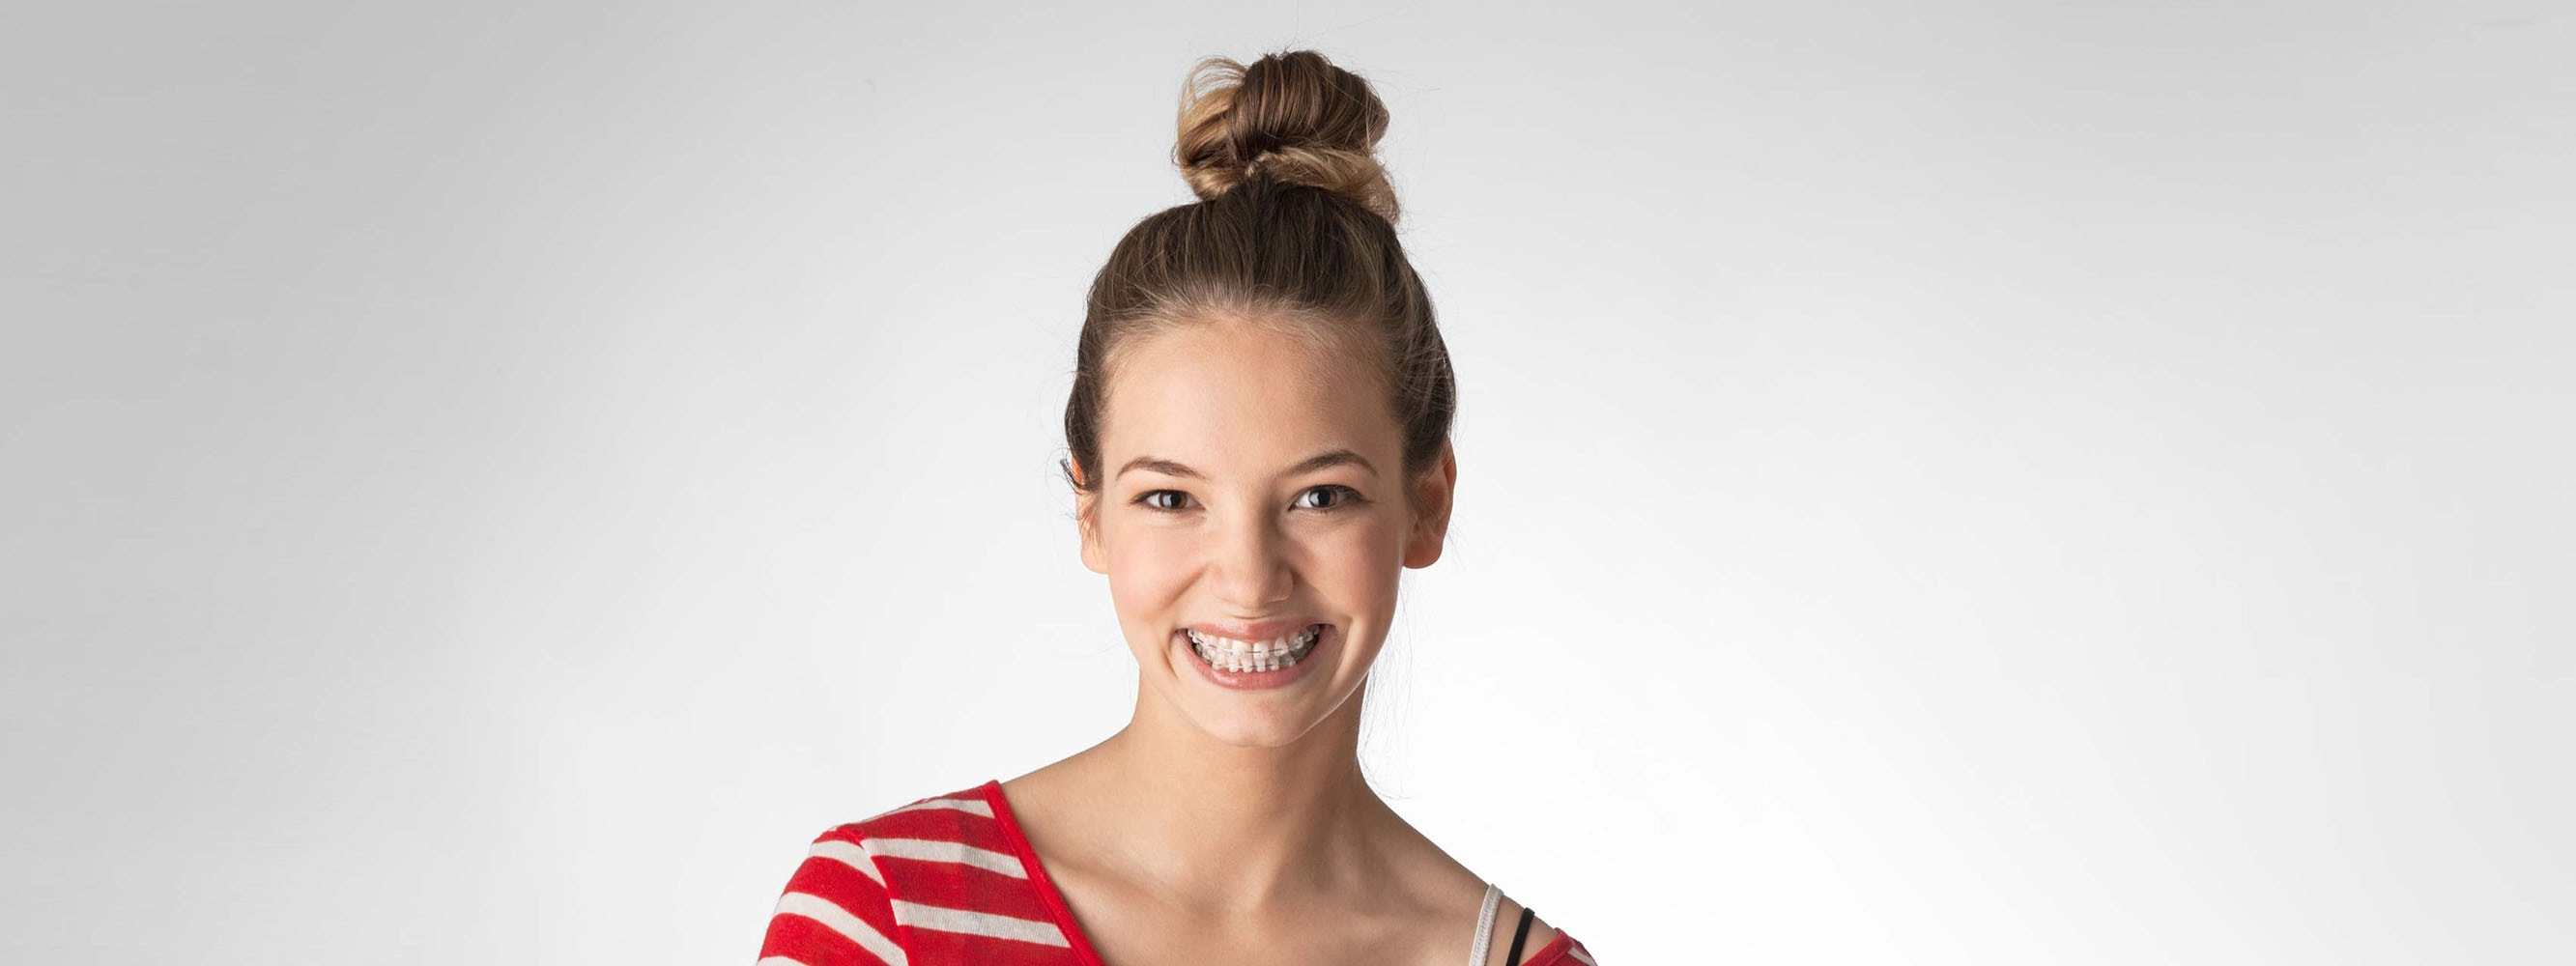 Lächelnde Teenagerin mit durchsichtige Zahnspangen